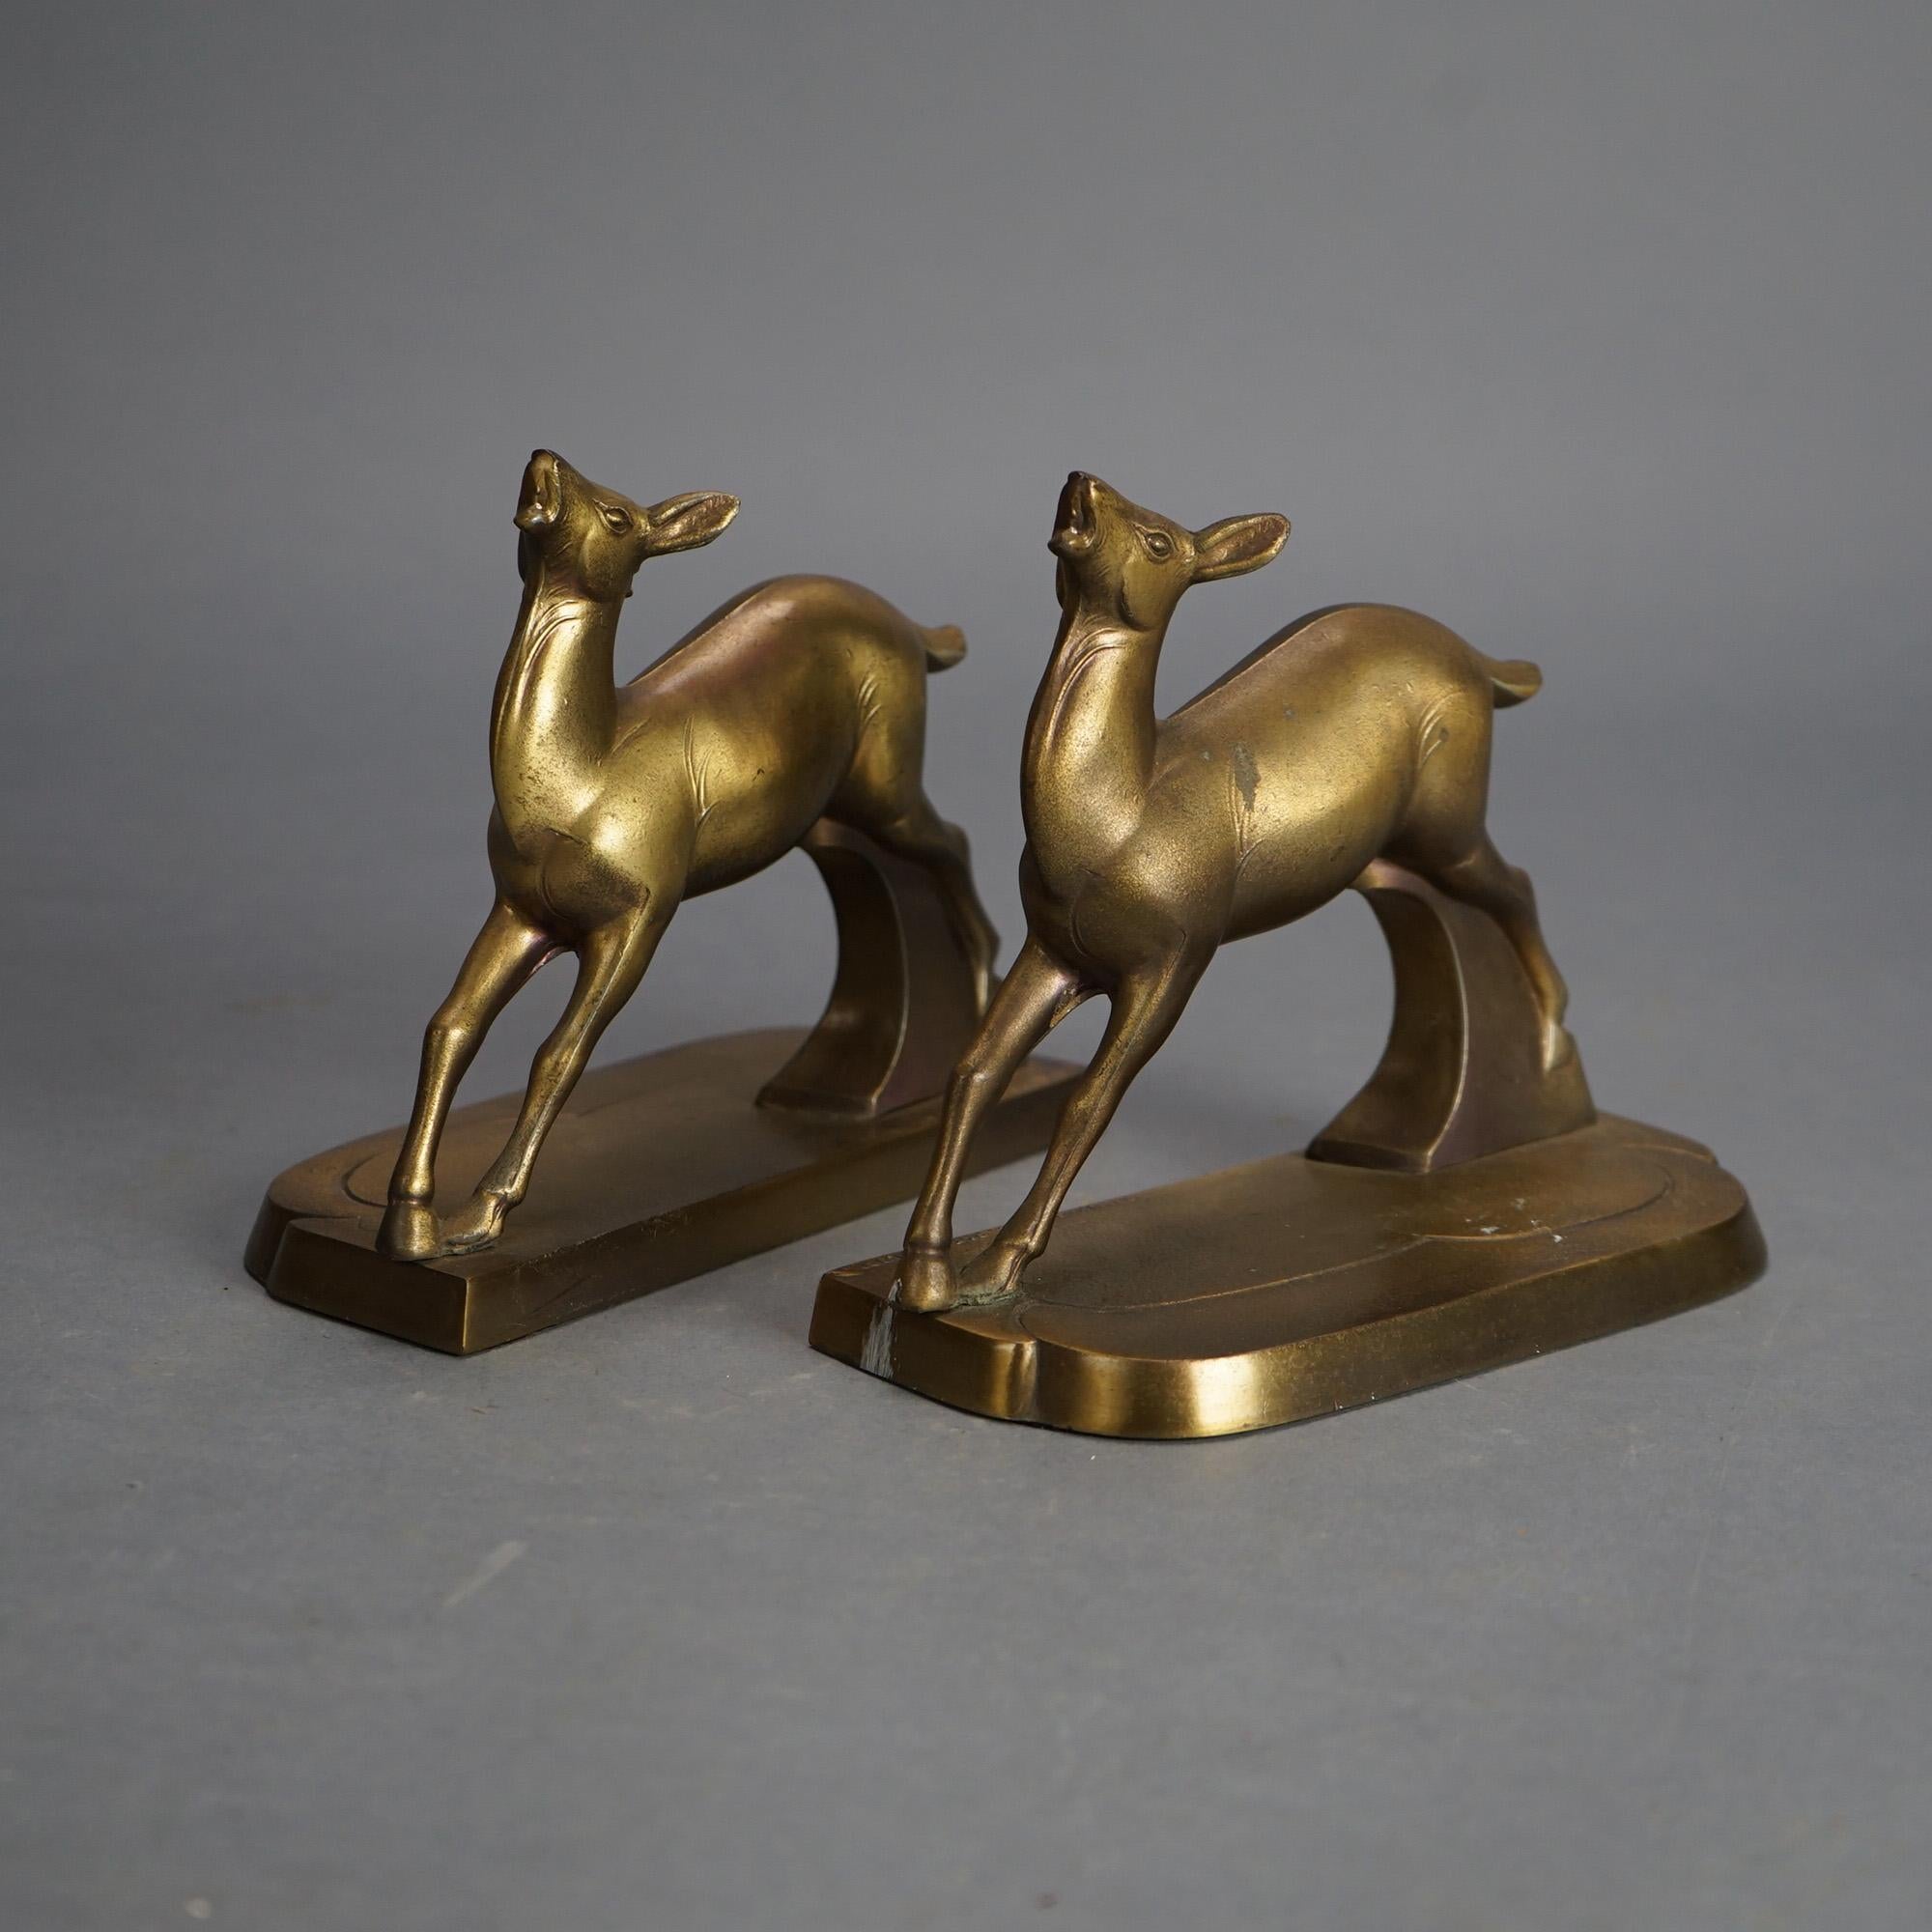 Antike Frankart Art Deco vergoldetem Metall gegossen figuralen Hirsch Buchstützen C1930

Maße - 6,5 